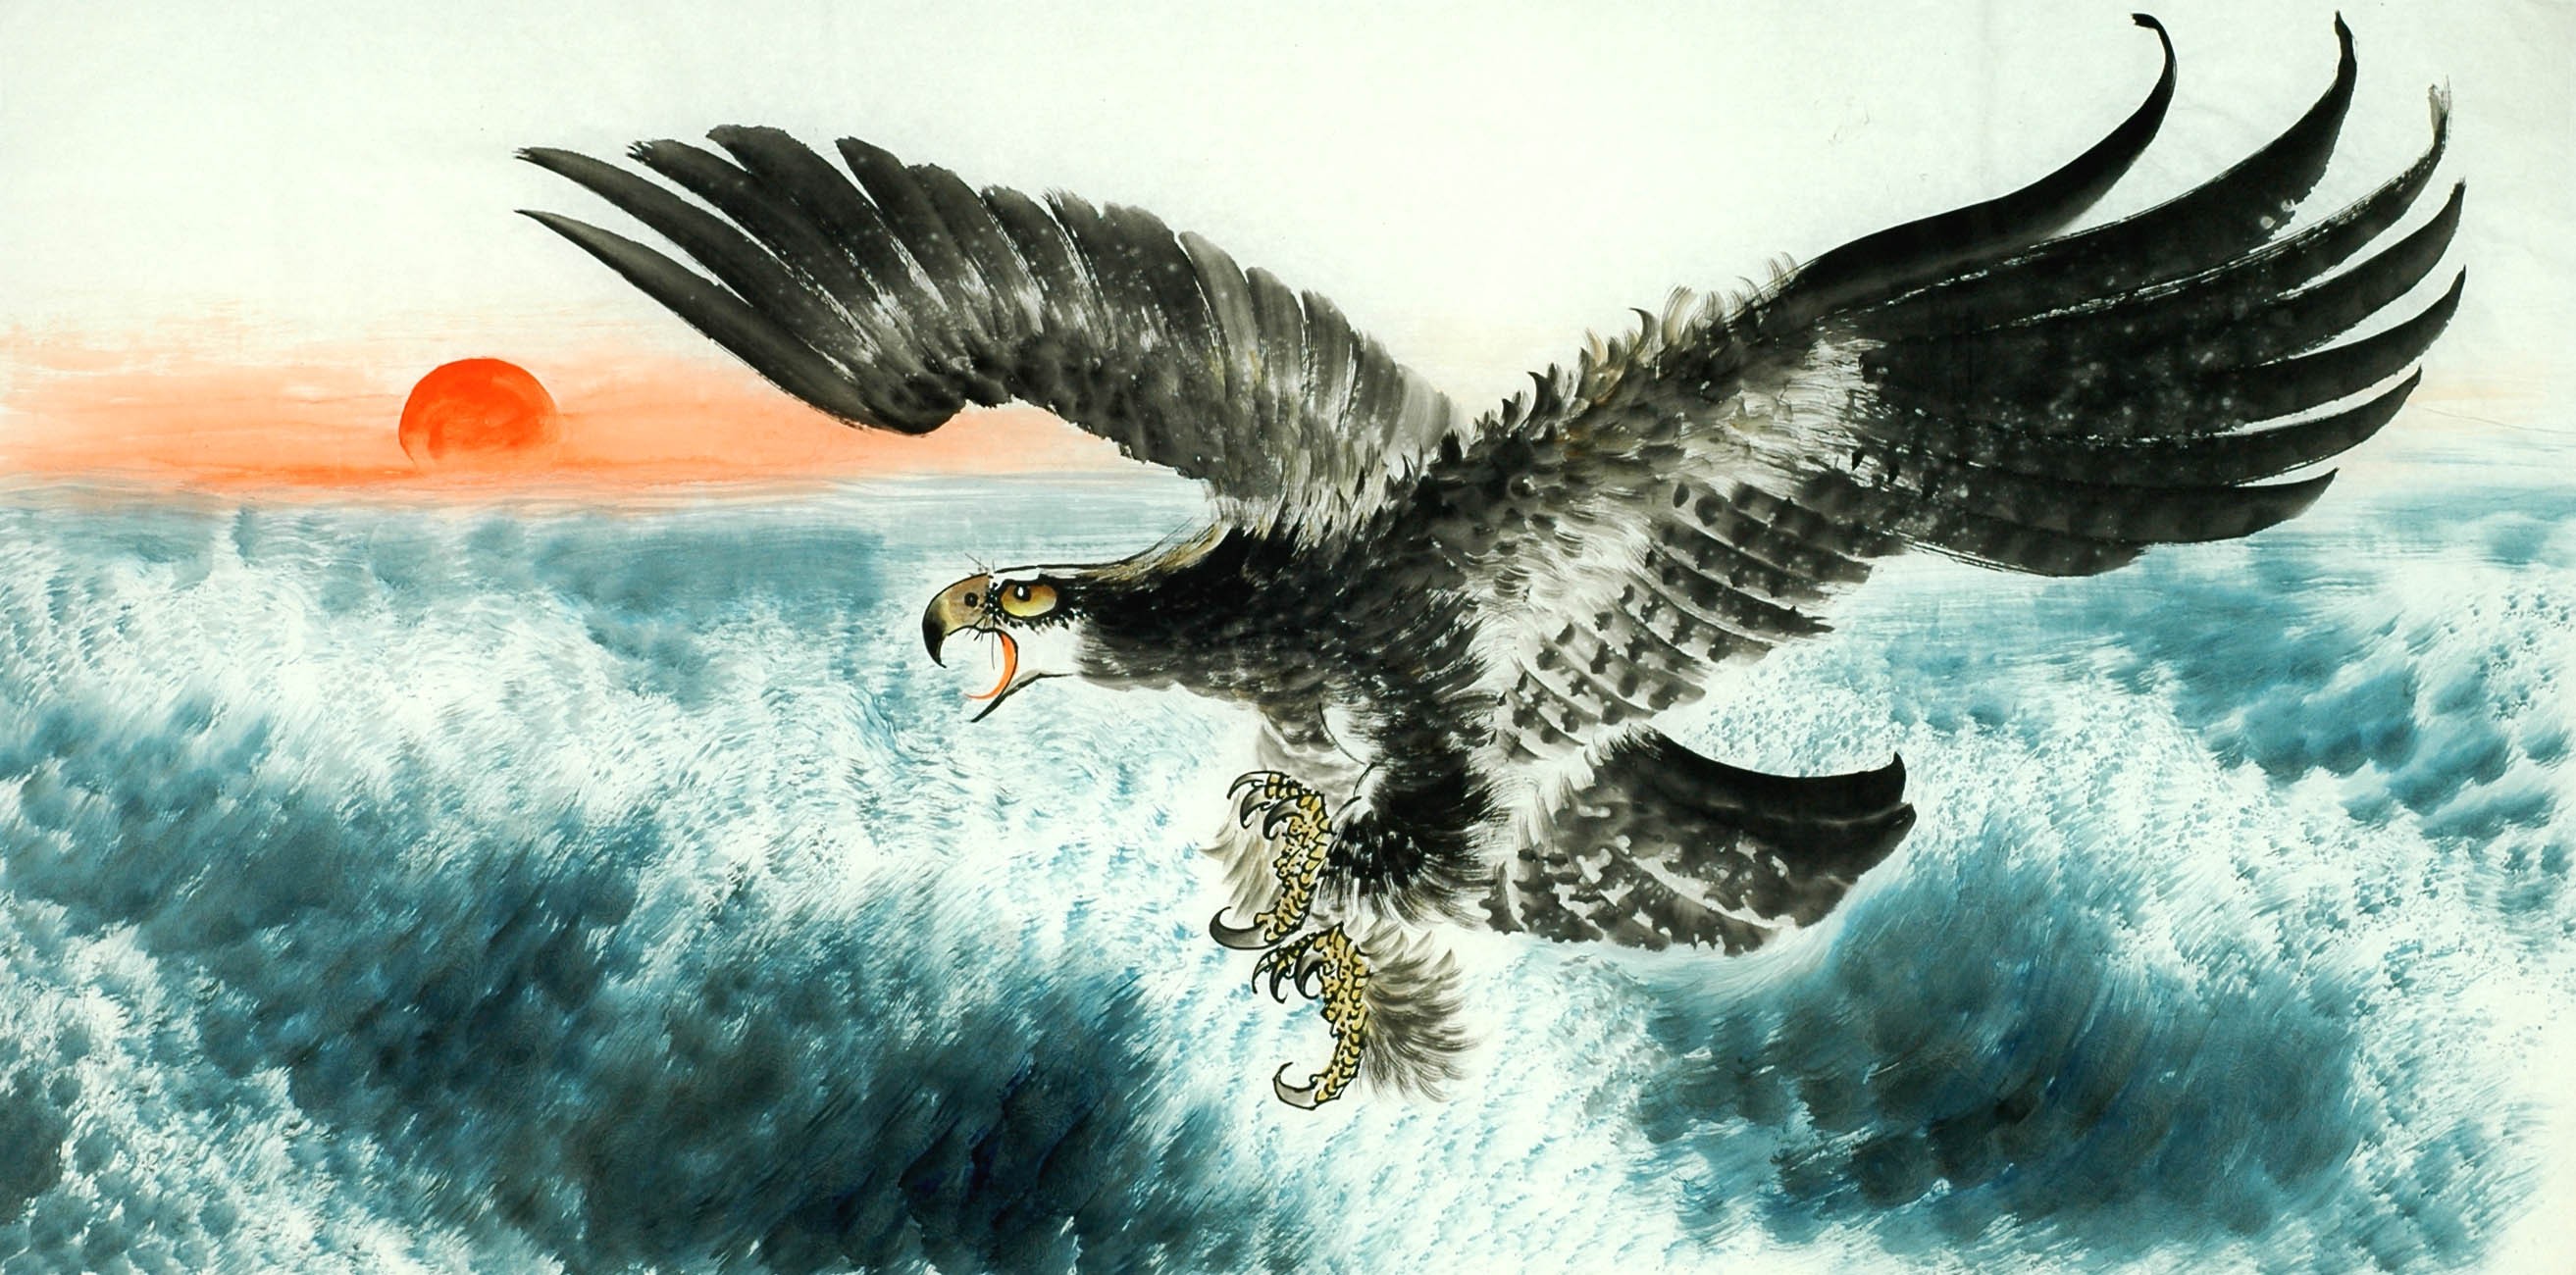 Chinese Eagle Painting - CNAG011292